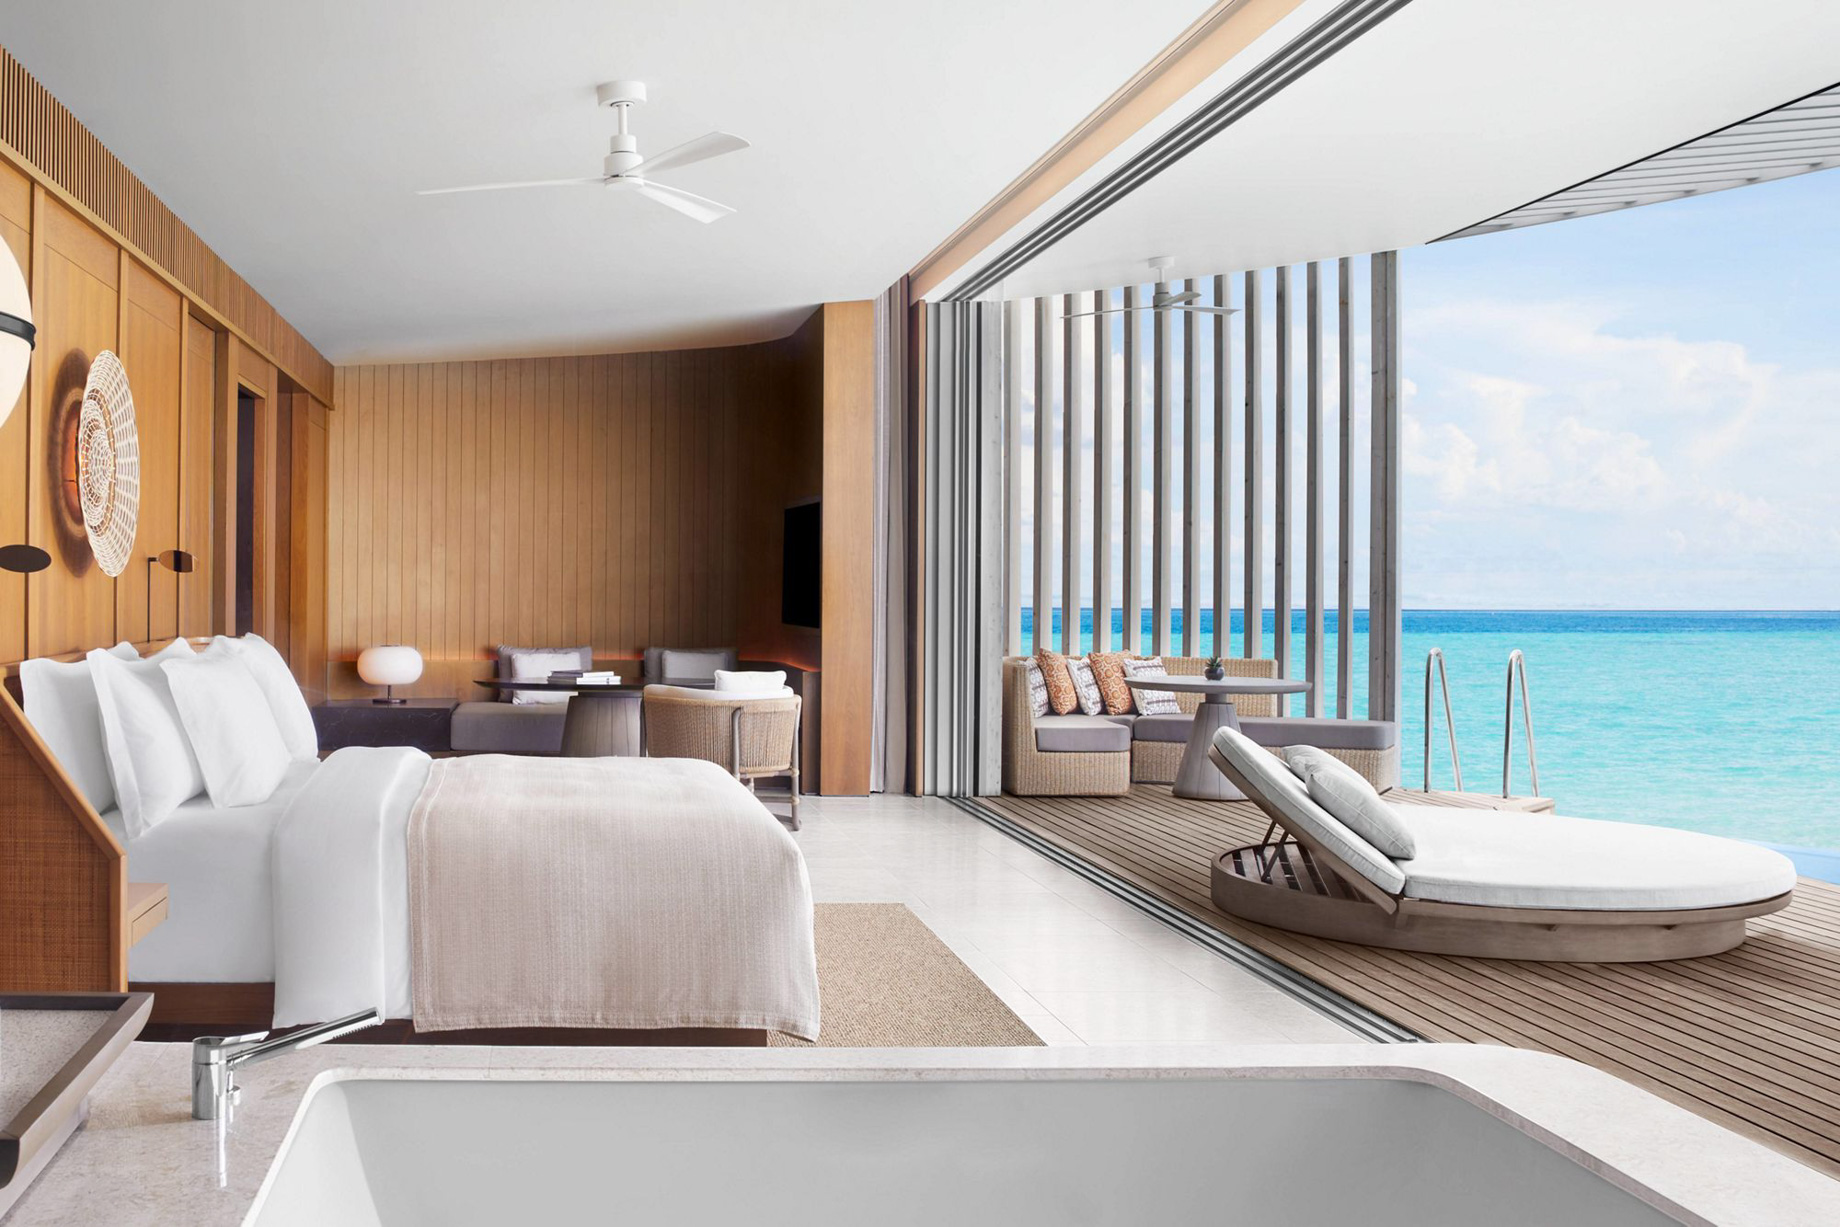 The Ritz-Carlton Maldives, Fari Islands Resort - North Male Atoll, Maldives - Overwater Ocean Villa